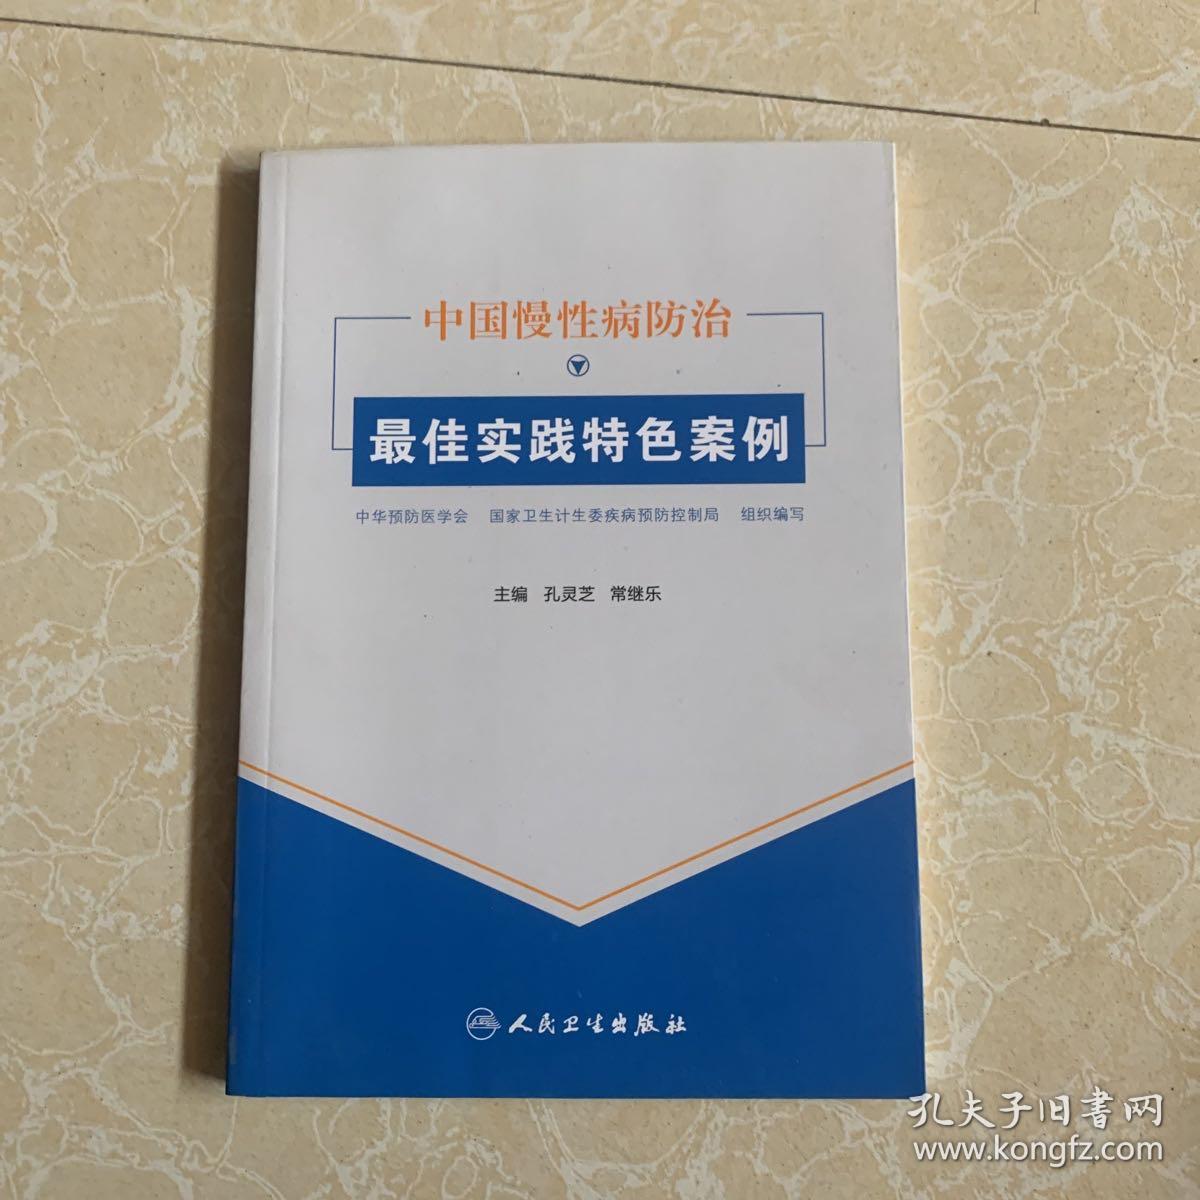 中国慢性病防治最佳实践特色案例